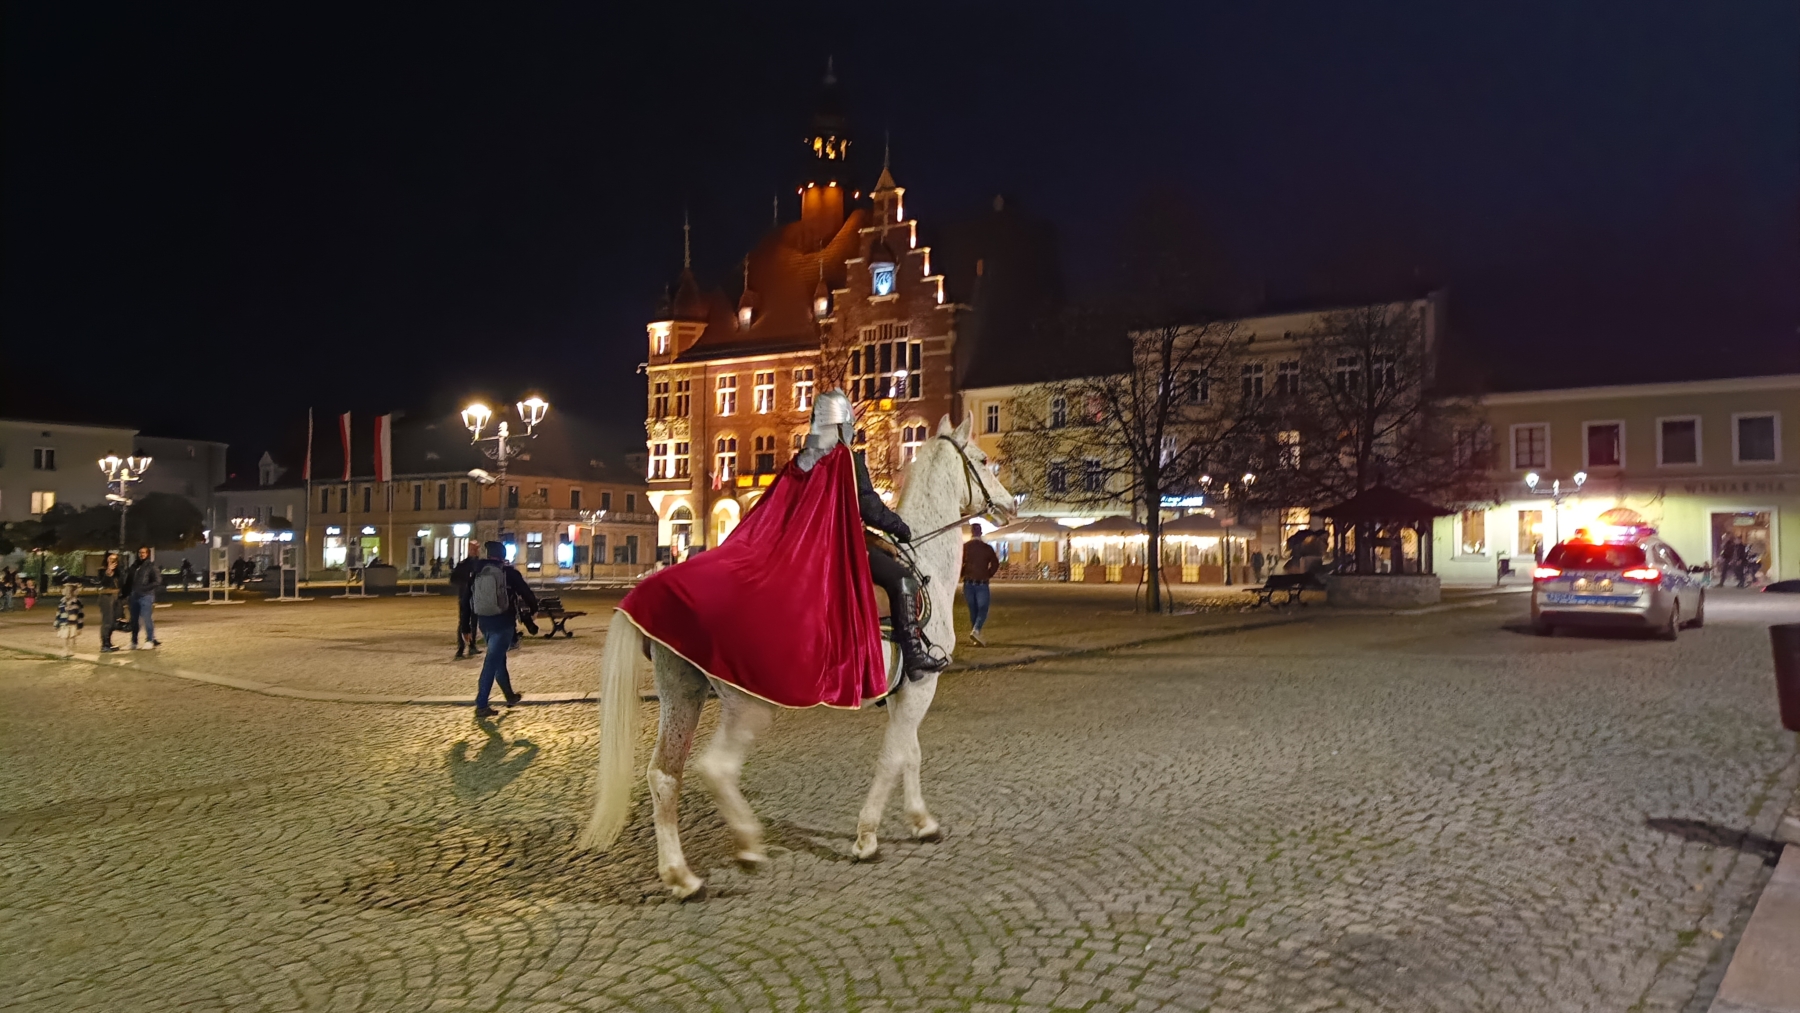 Aktorka przebrana za św. Marcina jedzie na koniu ulicą.